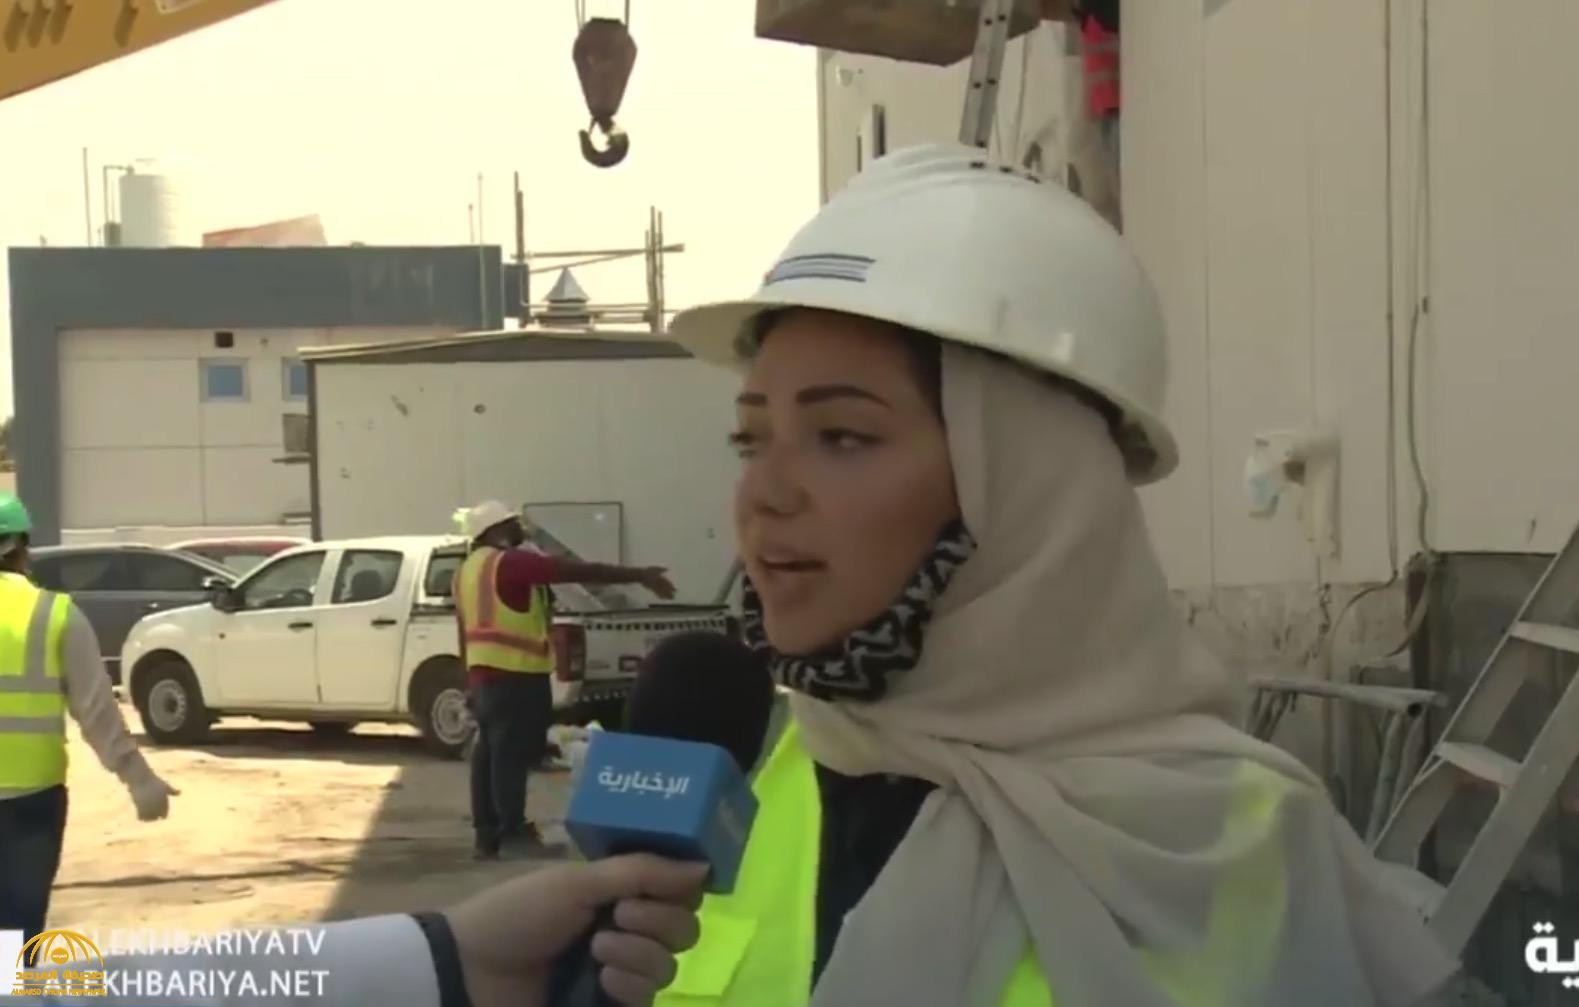 شاهد: مهندسة سعودية تباشر مبنى تحت الإنشاء.. وتحكي عن تجربتها الميدانية وهكذا وصفتها